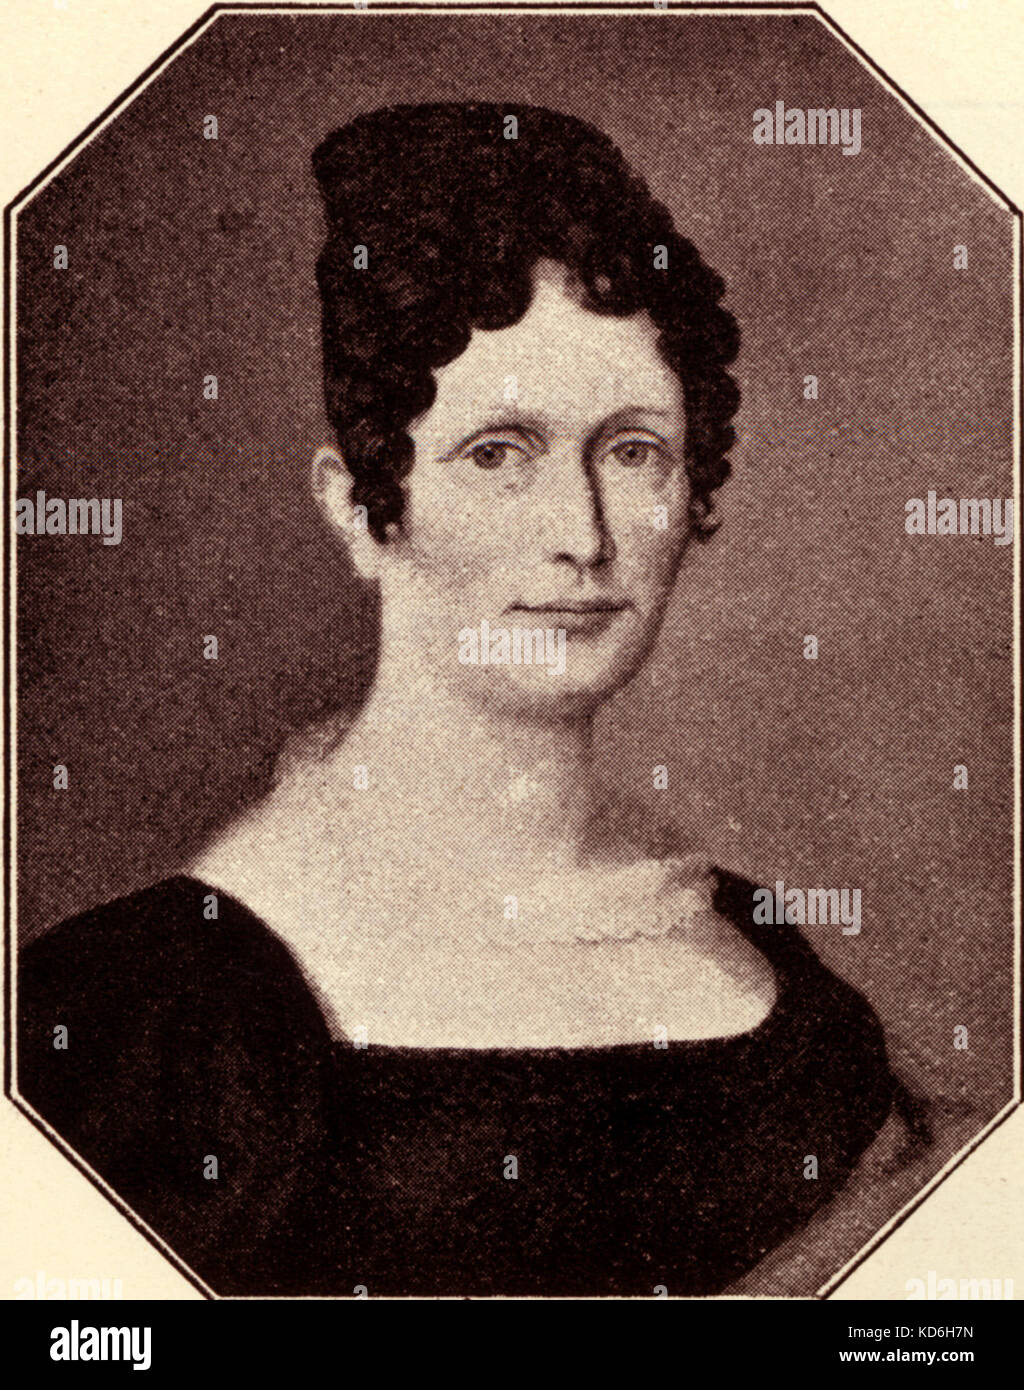 La mère de Robert Schumann Johanna Christiane Schumann. Schumann:compositeur allemand, 1810-1856. Banque D'Images